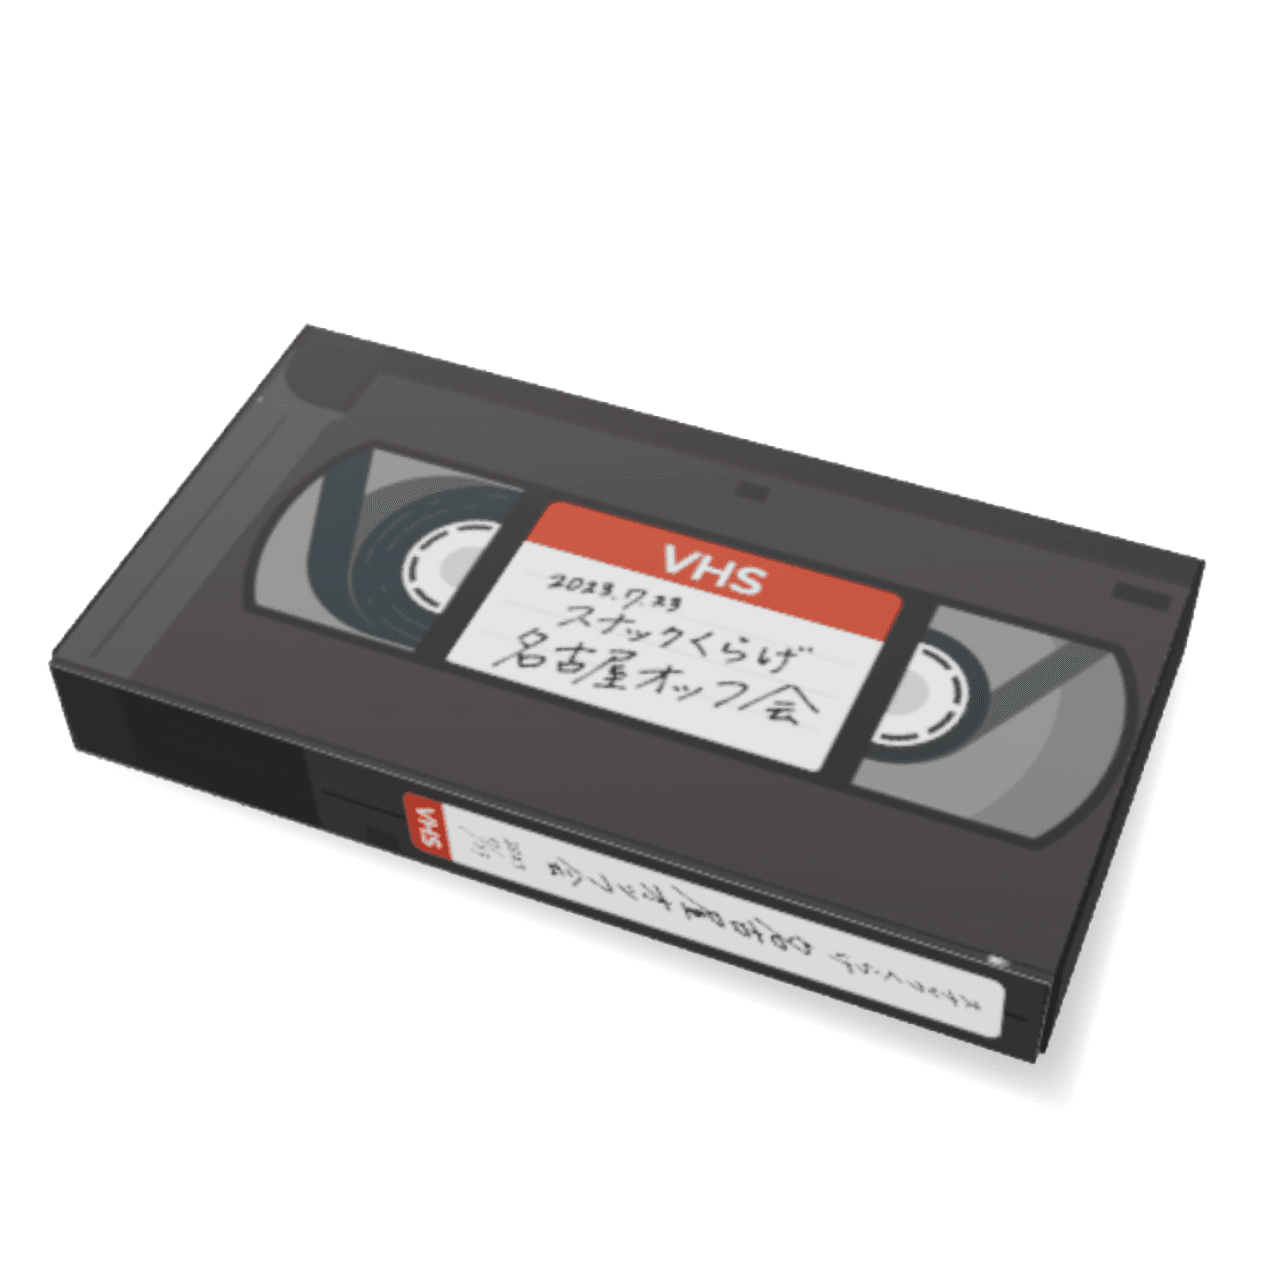 第1回スナックくらげ名古屋オッフ会 VHS